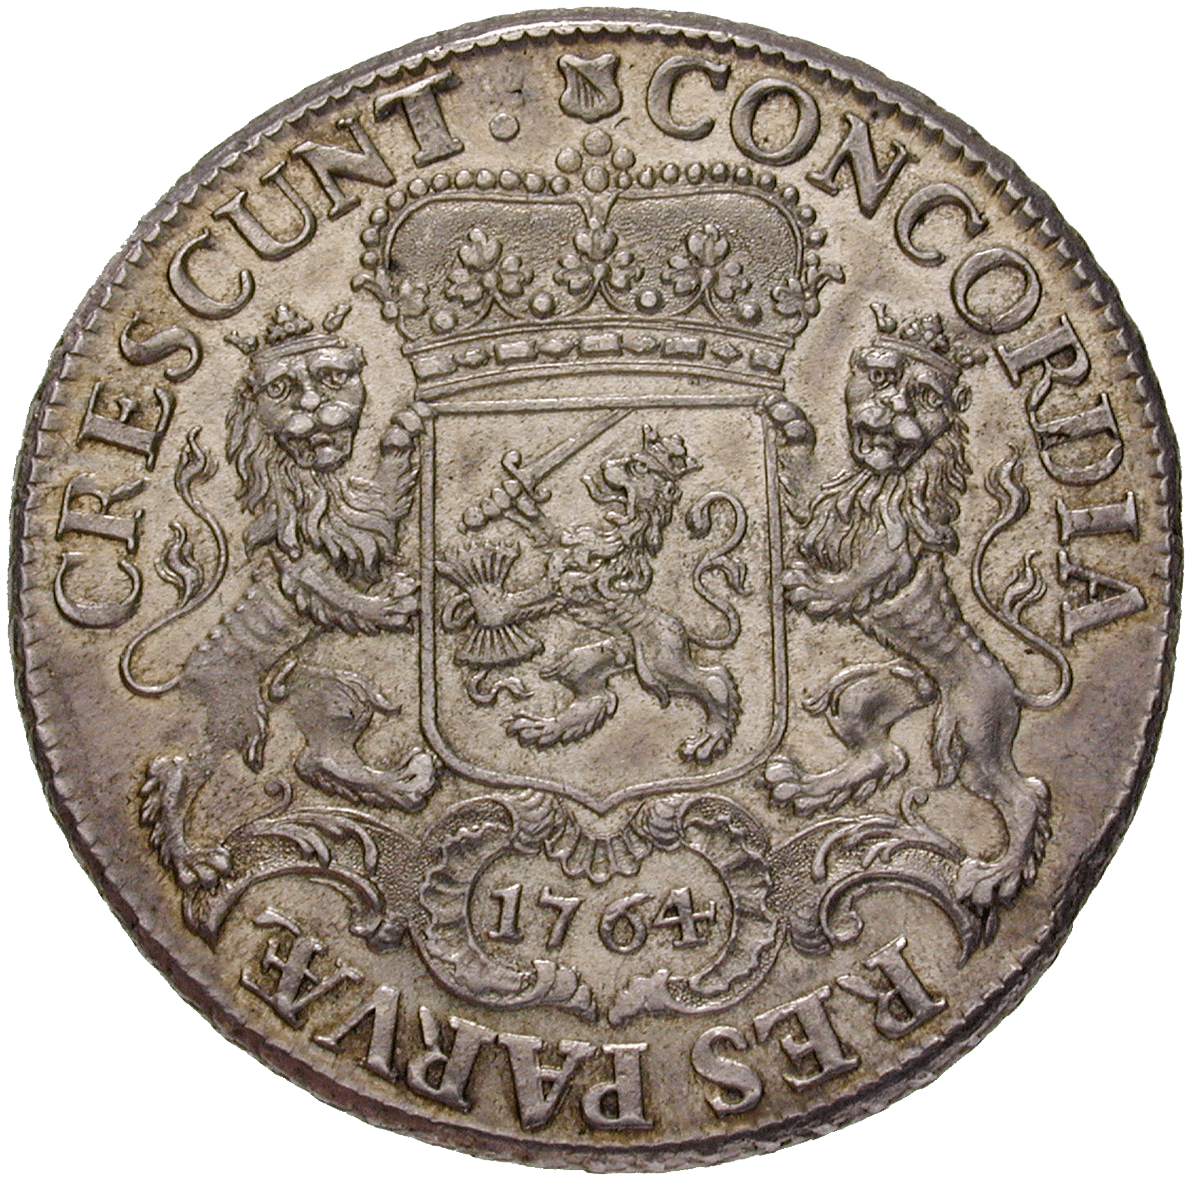 Republik der Vereinigten Niederlande, Provinz Utrecht, Dukaton des Silbernen Reiters 1764 (reverse)